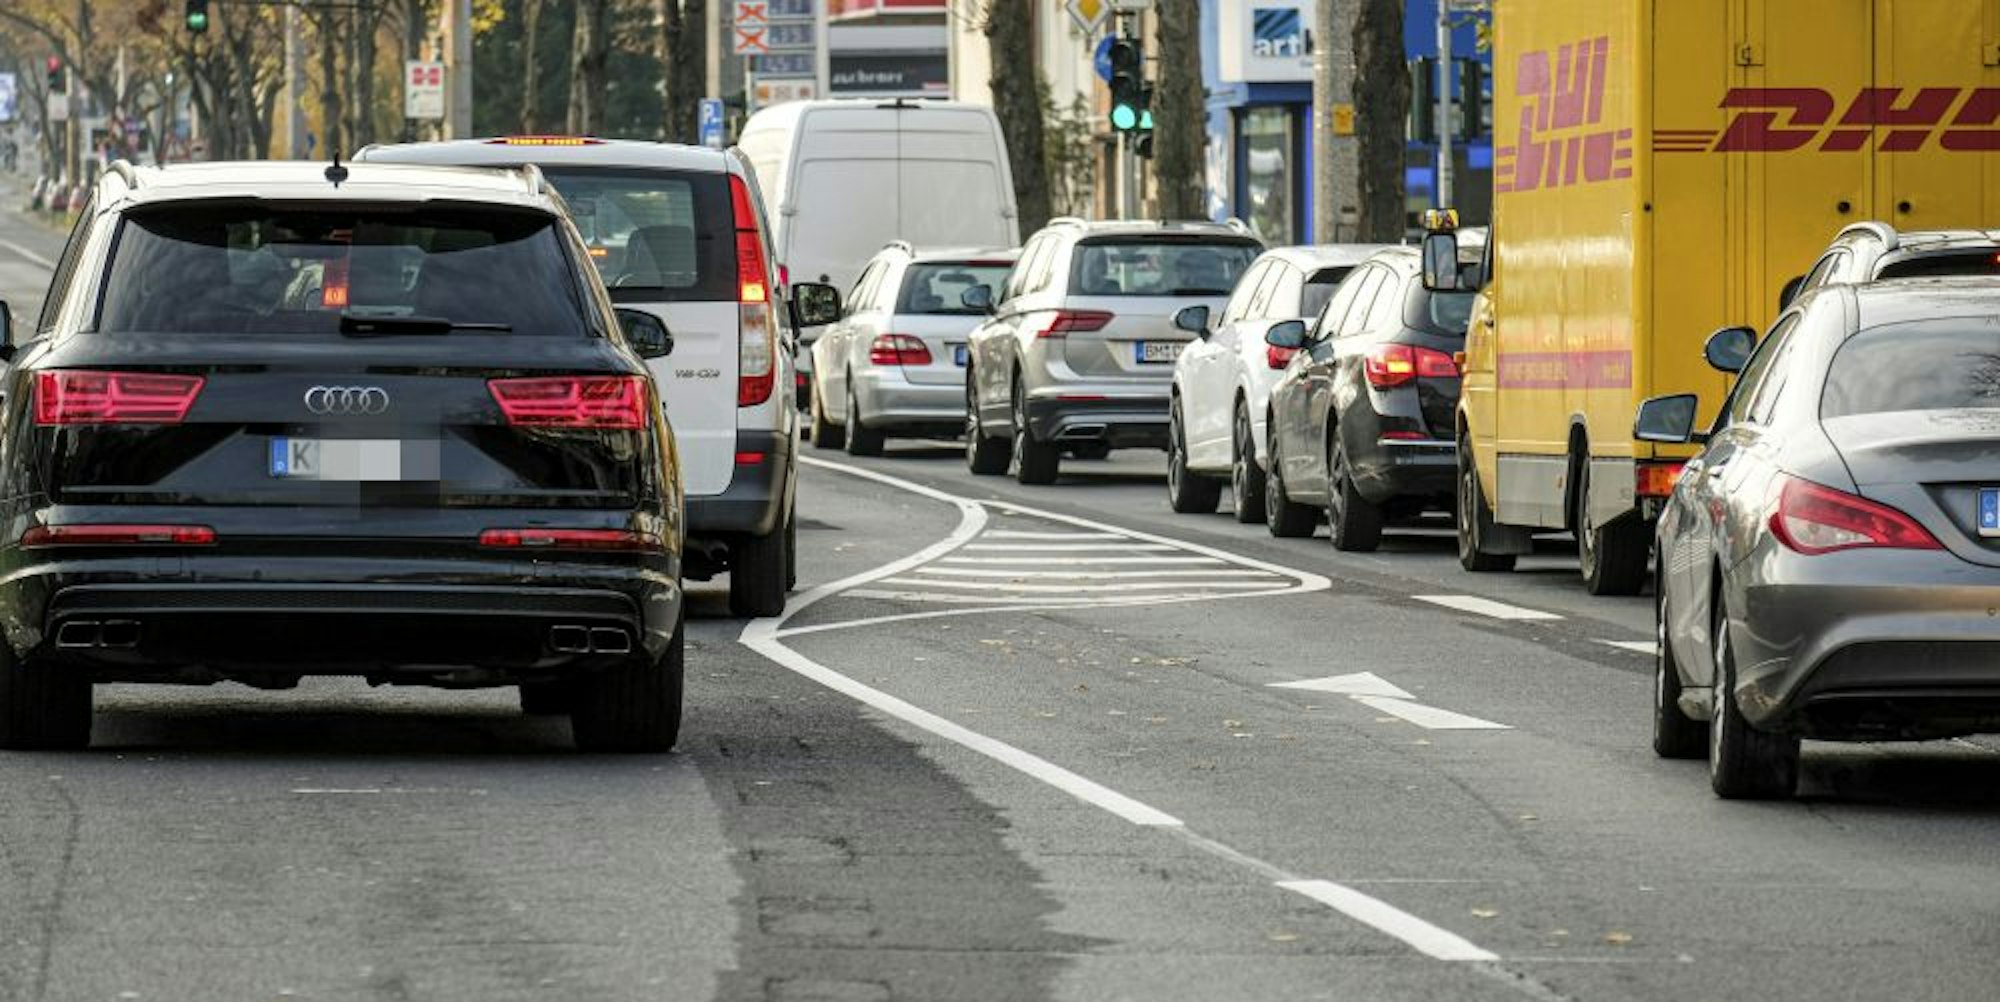 Einfädeln auf die rechte Spur, die neue Regelung sorgt für erhöhte Unfallgefahr auf der Aachener Straße.